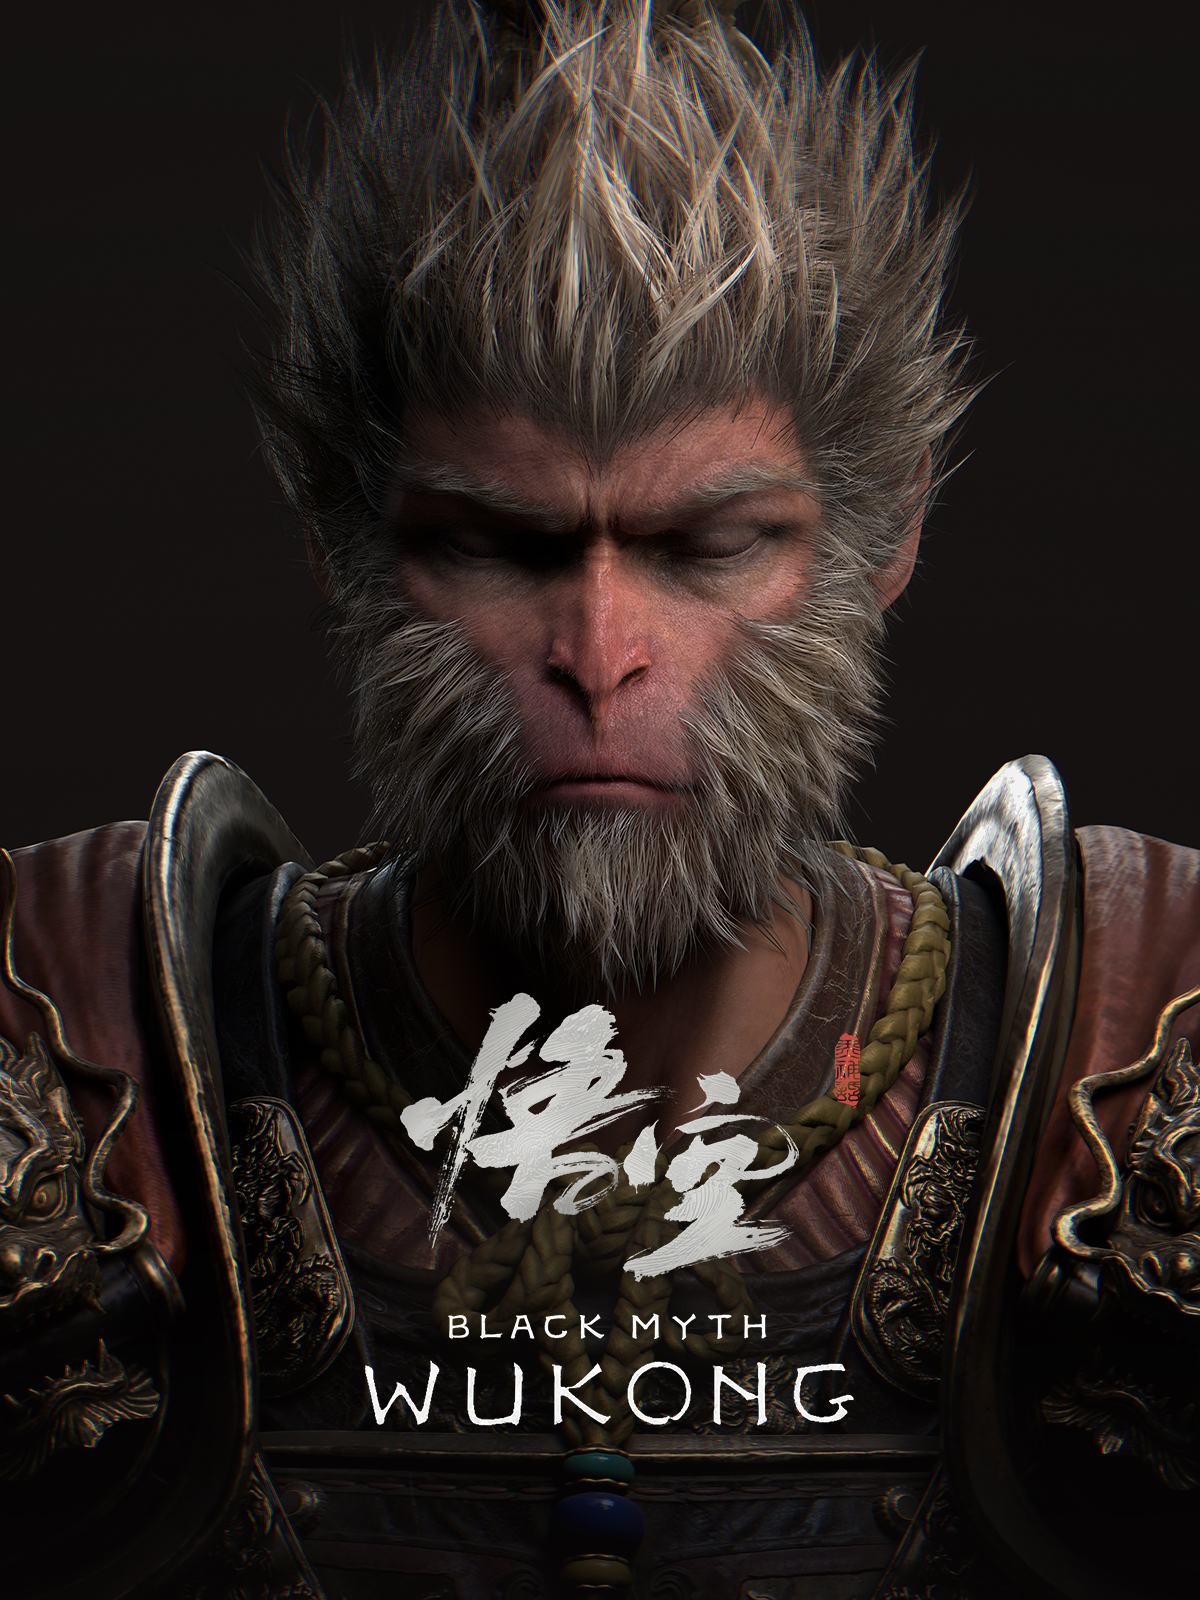 jaquette reduite de Black Myth: Wukong sur PC